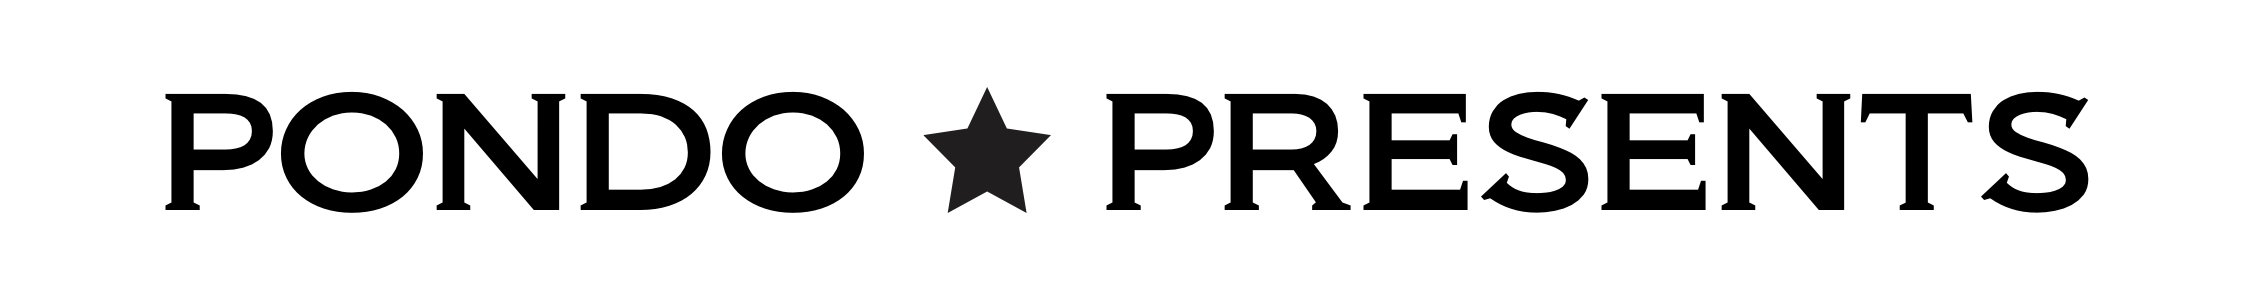 Pondo Presents Logo.jpg